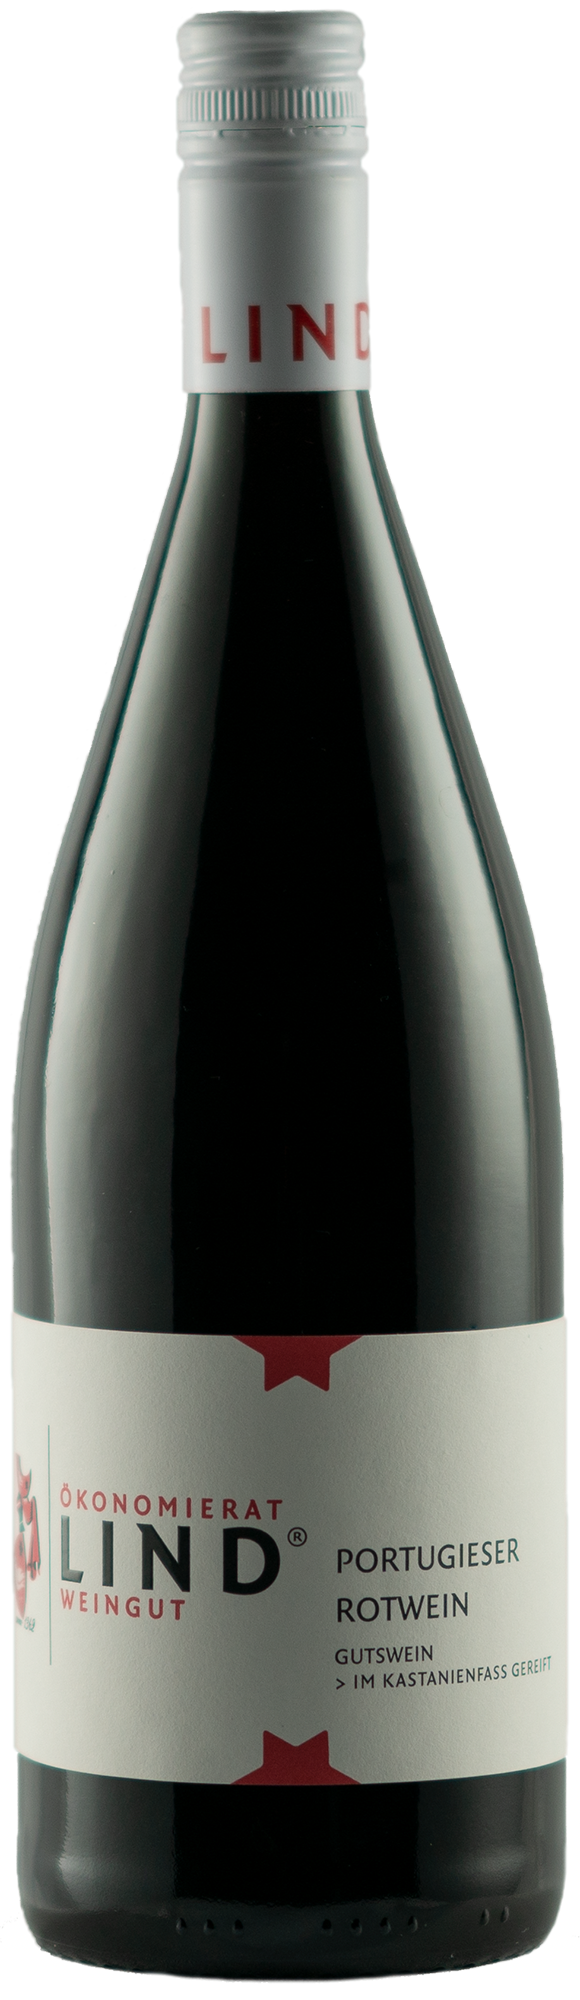 Portugieser Rotwein Gutswein 1,0 L ► Weingut Ökonomierat Lind